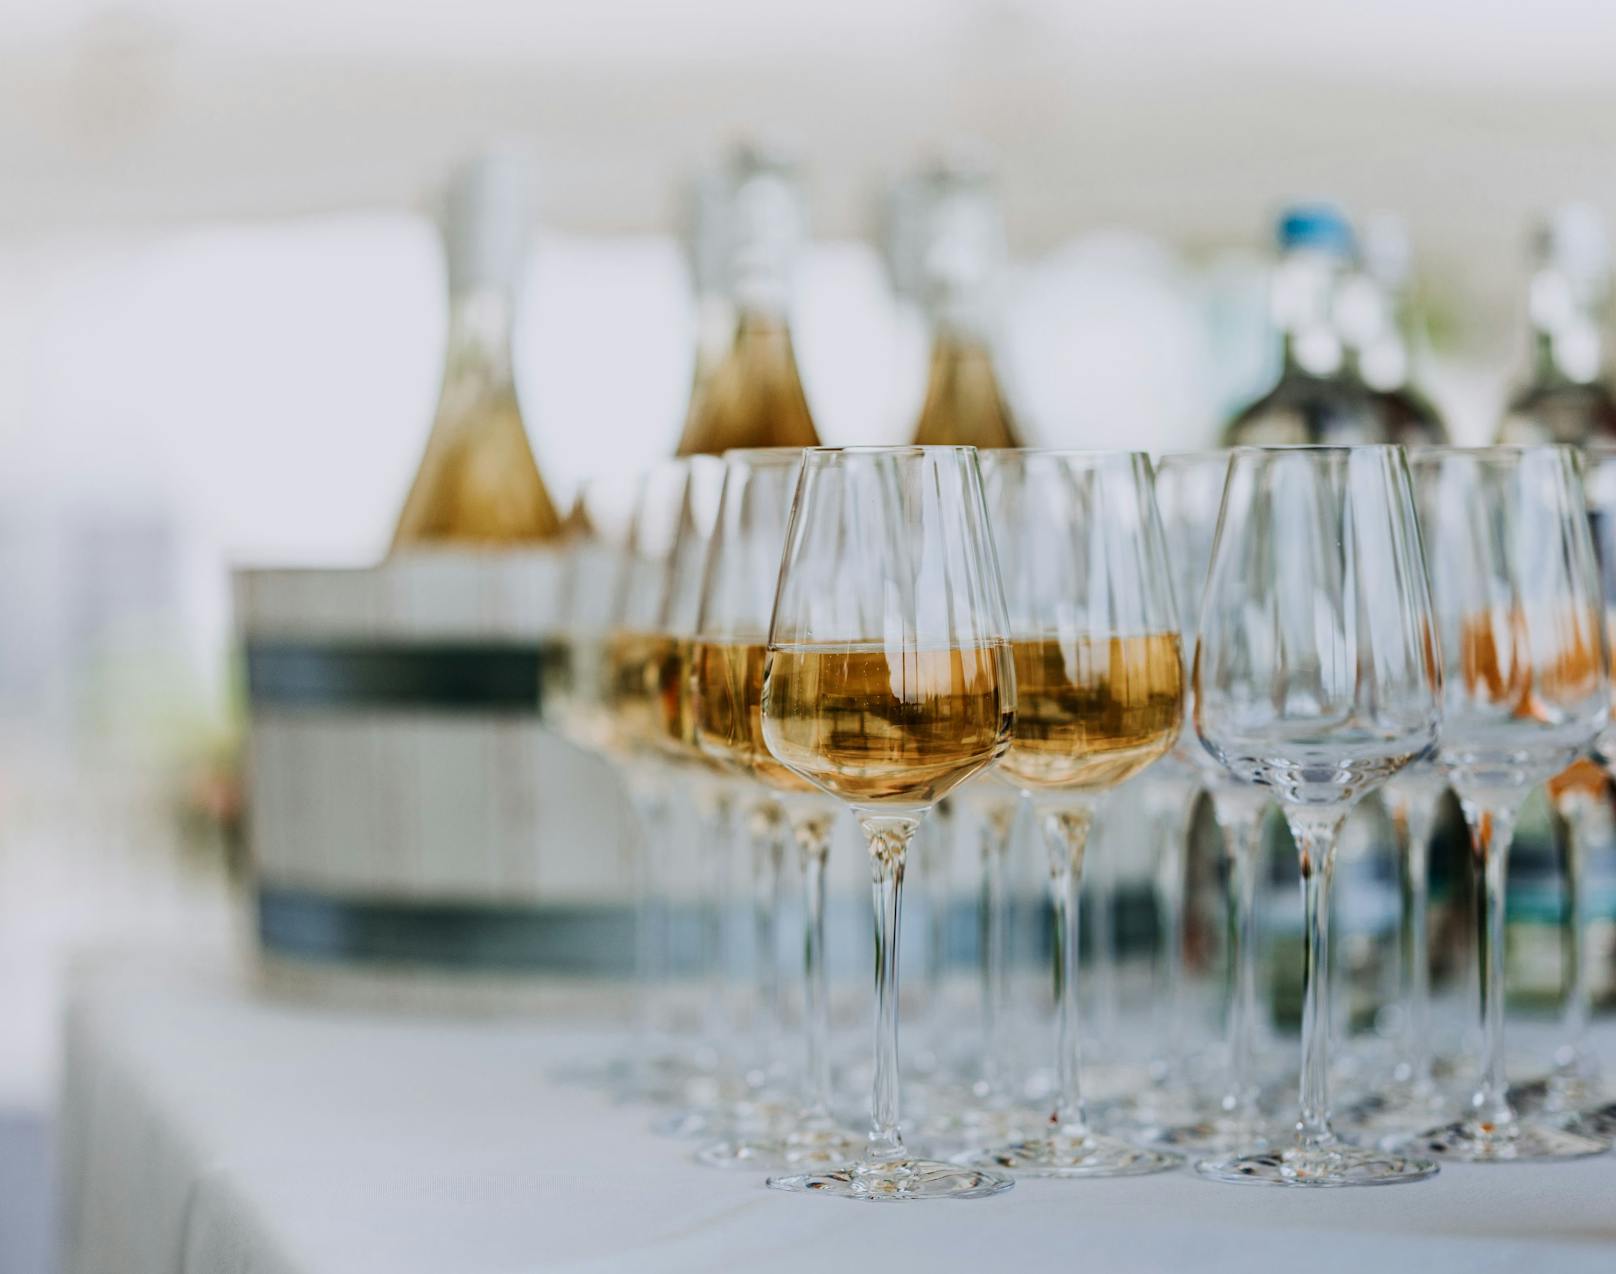 <strong>Tipp 1: Das perfekte Glas! </strong>Weder Flöten, noch Schalen sind tatsächlich perfekt, sondern ein schönes Weißweinglas. Denn guter Champagner ist vor allem eines: Wein. Mit prickelnder Haltung. Strahlendem Glanz. Betörendem Aroma.